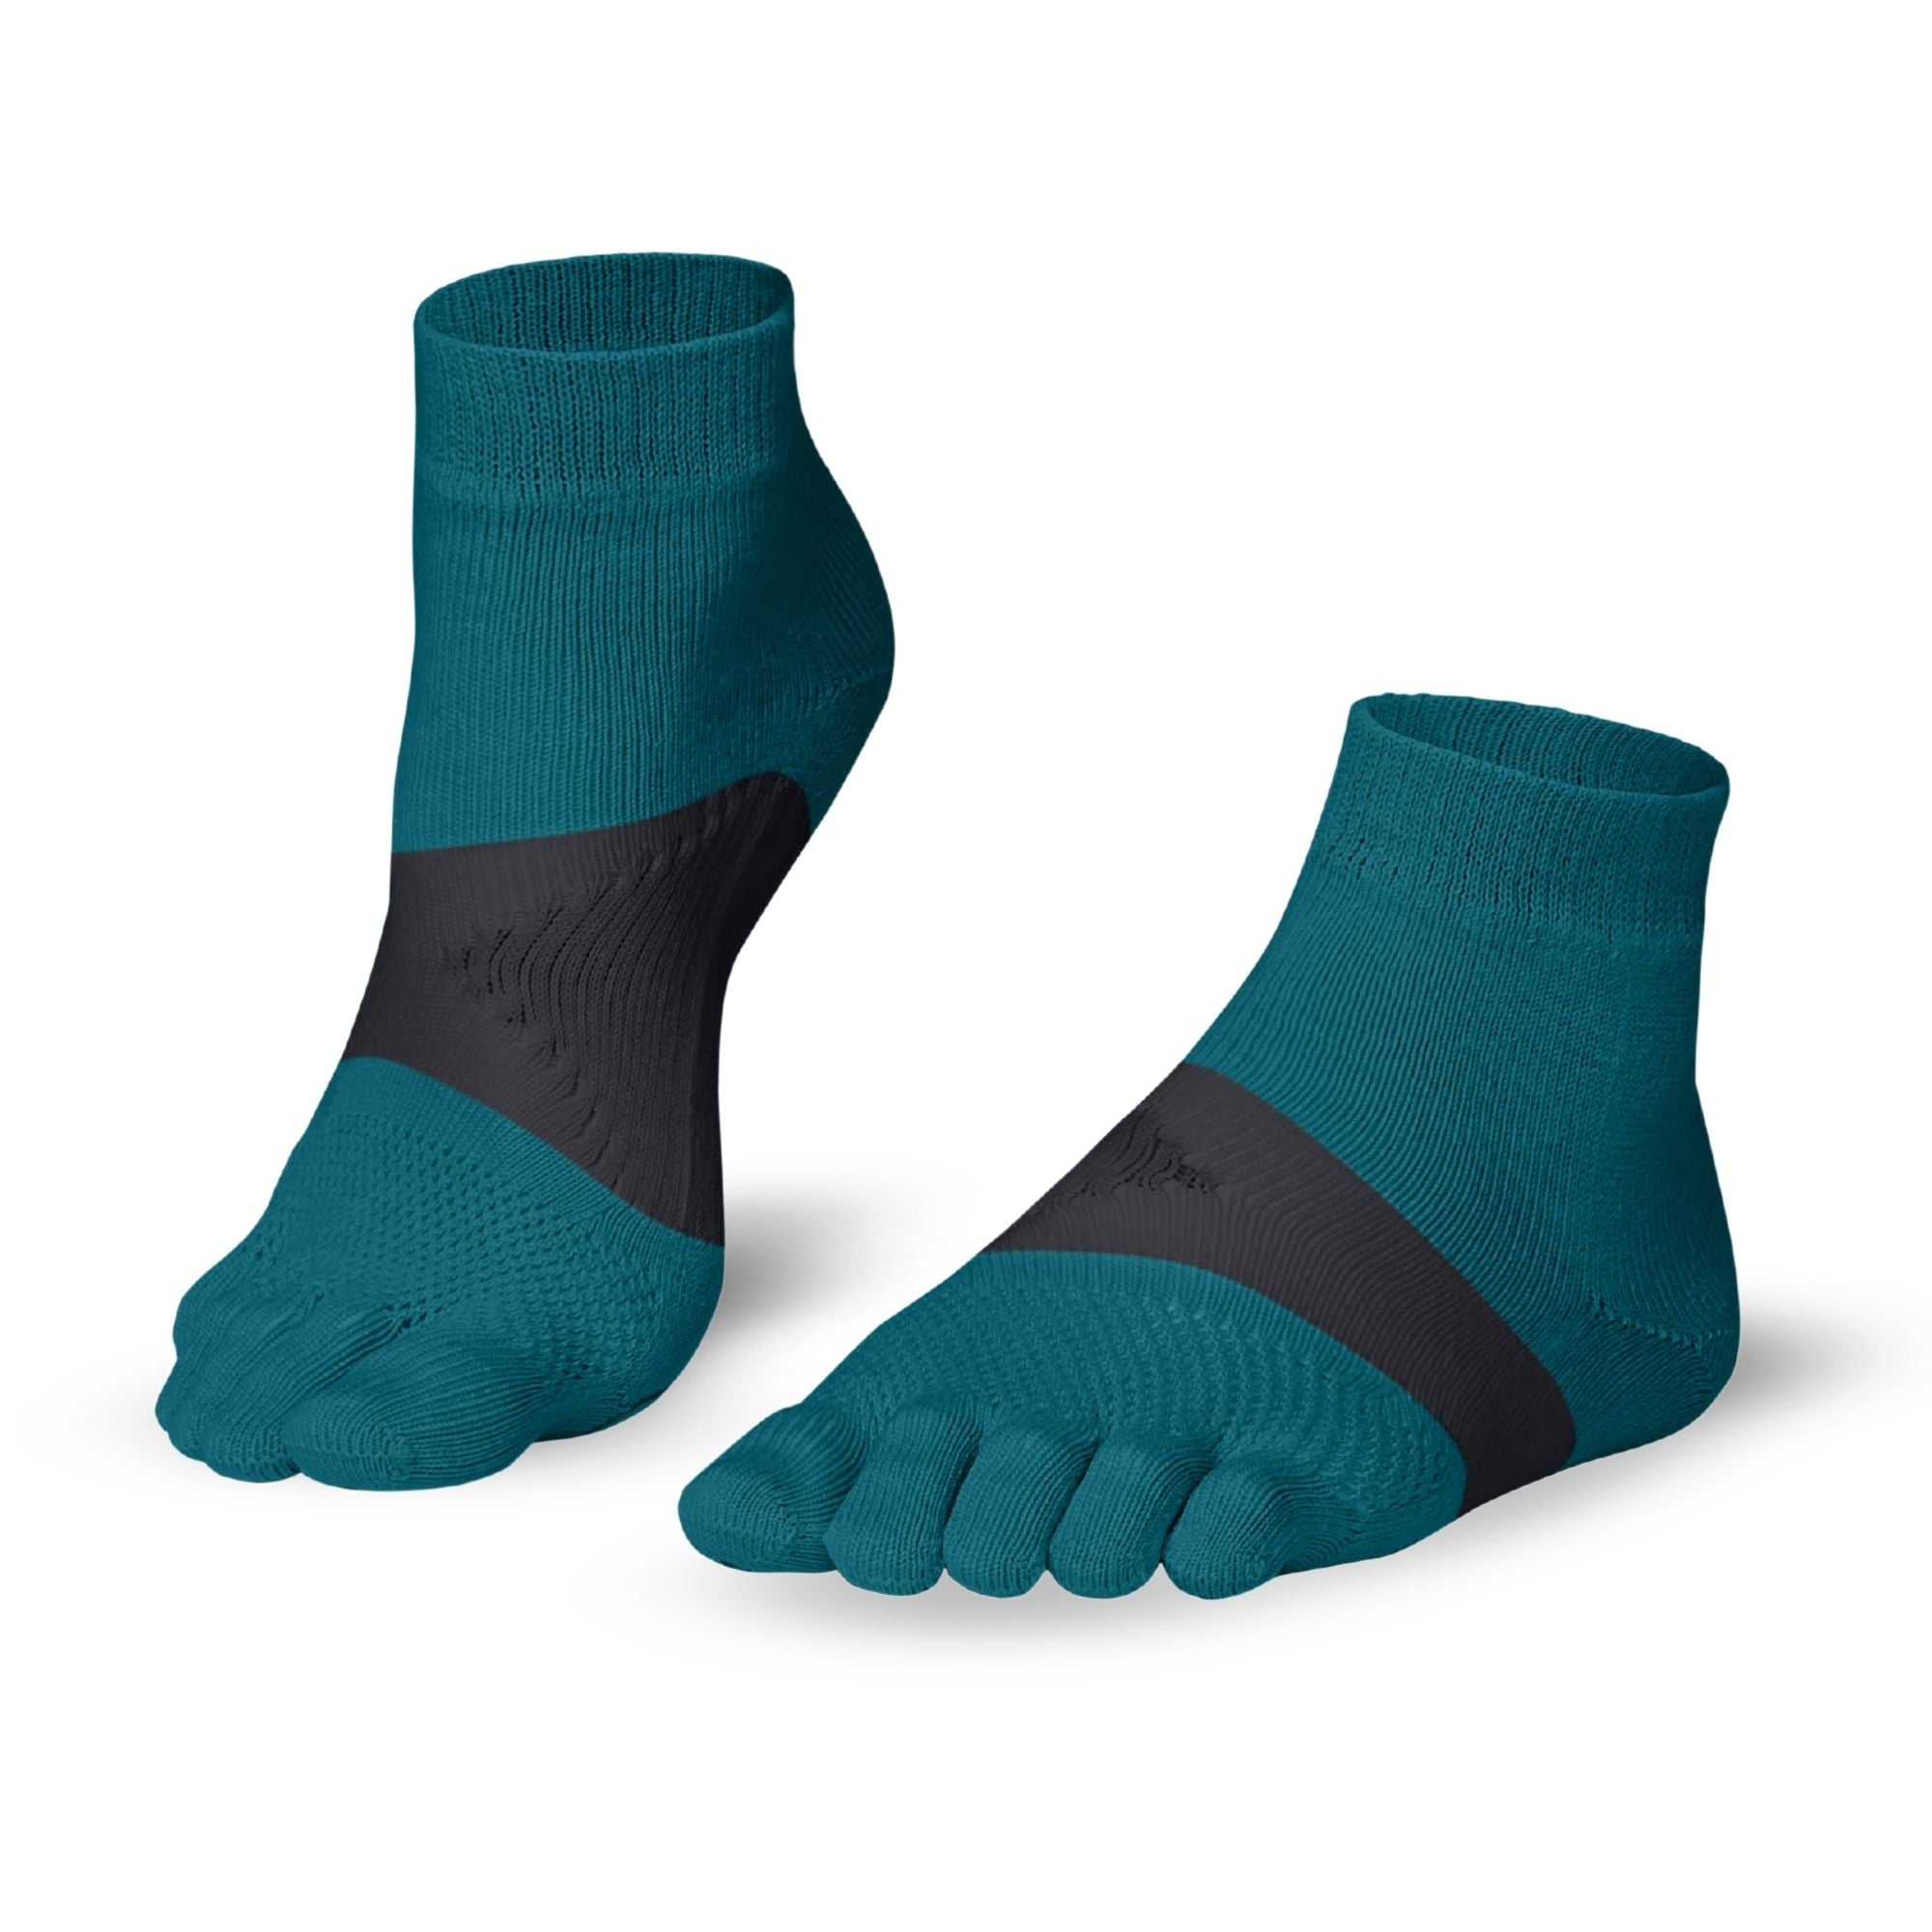 Knitido Marathon TS chaussettes à orteils - Knitido